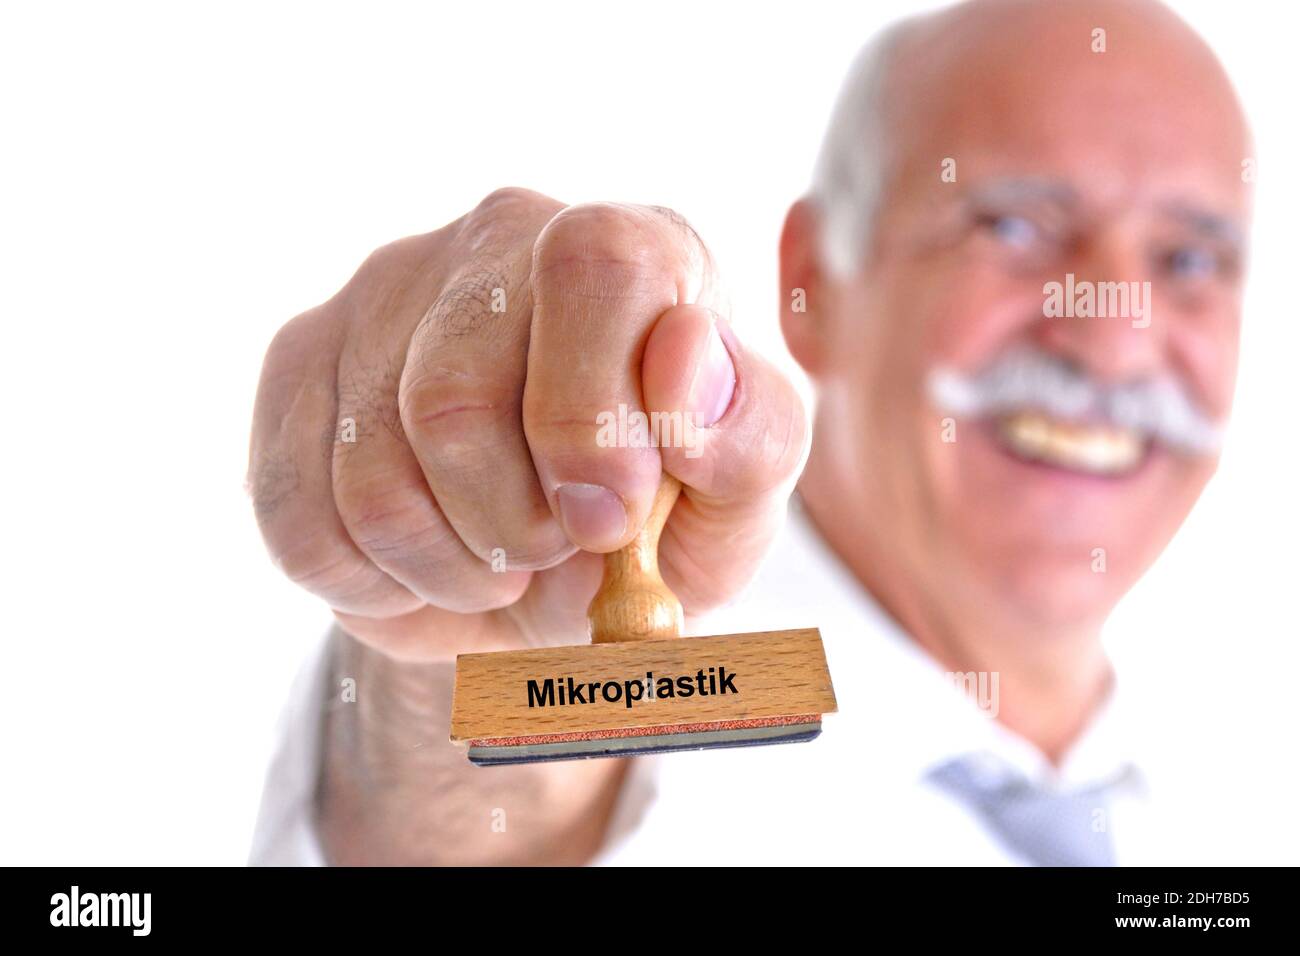 65, 70, Jahre, Mann hält Stempel in der Hand, Aufschrift: Mikroplastik, Stock Photo